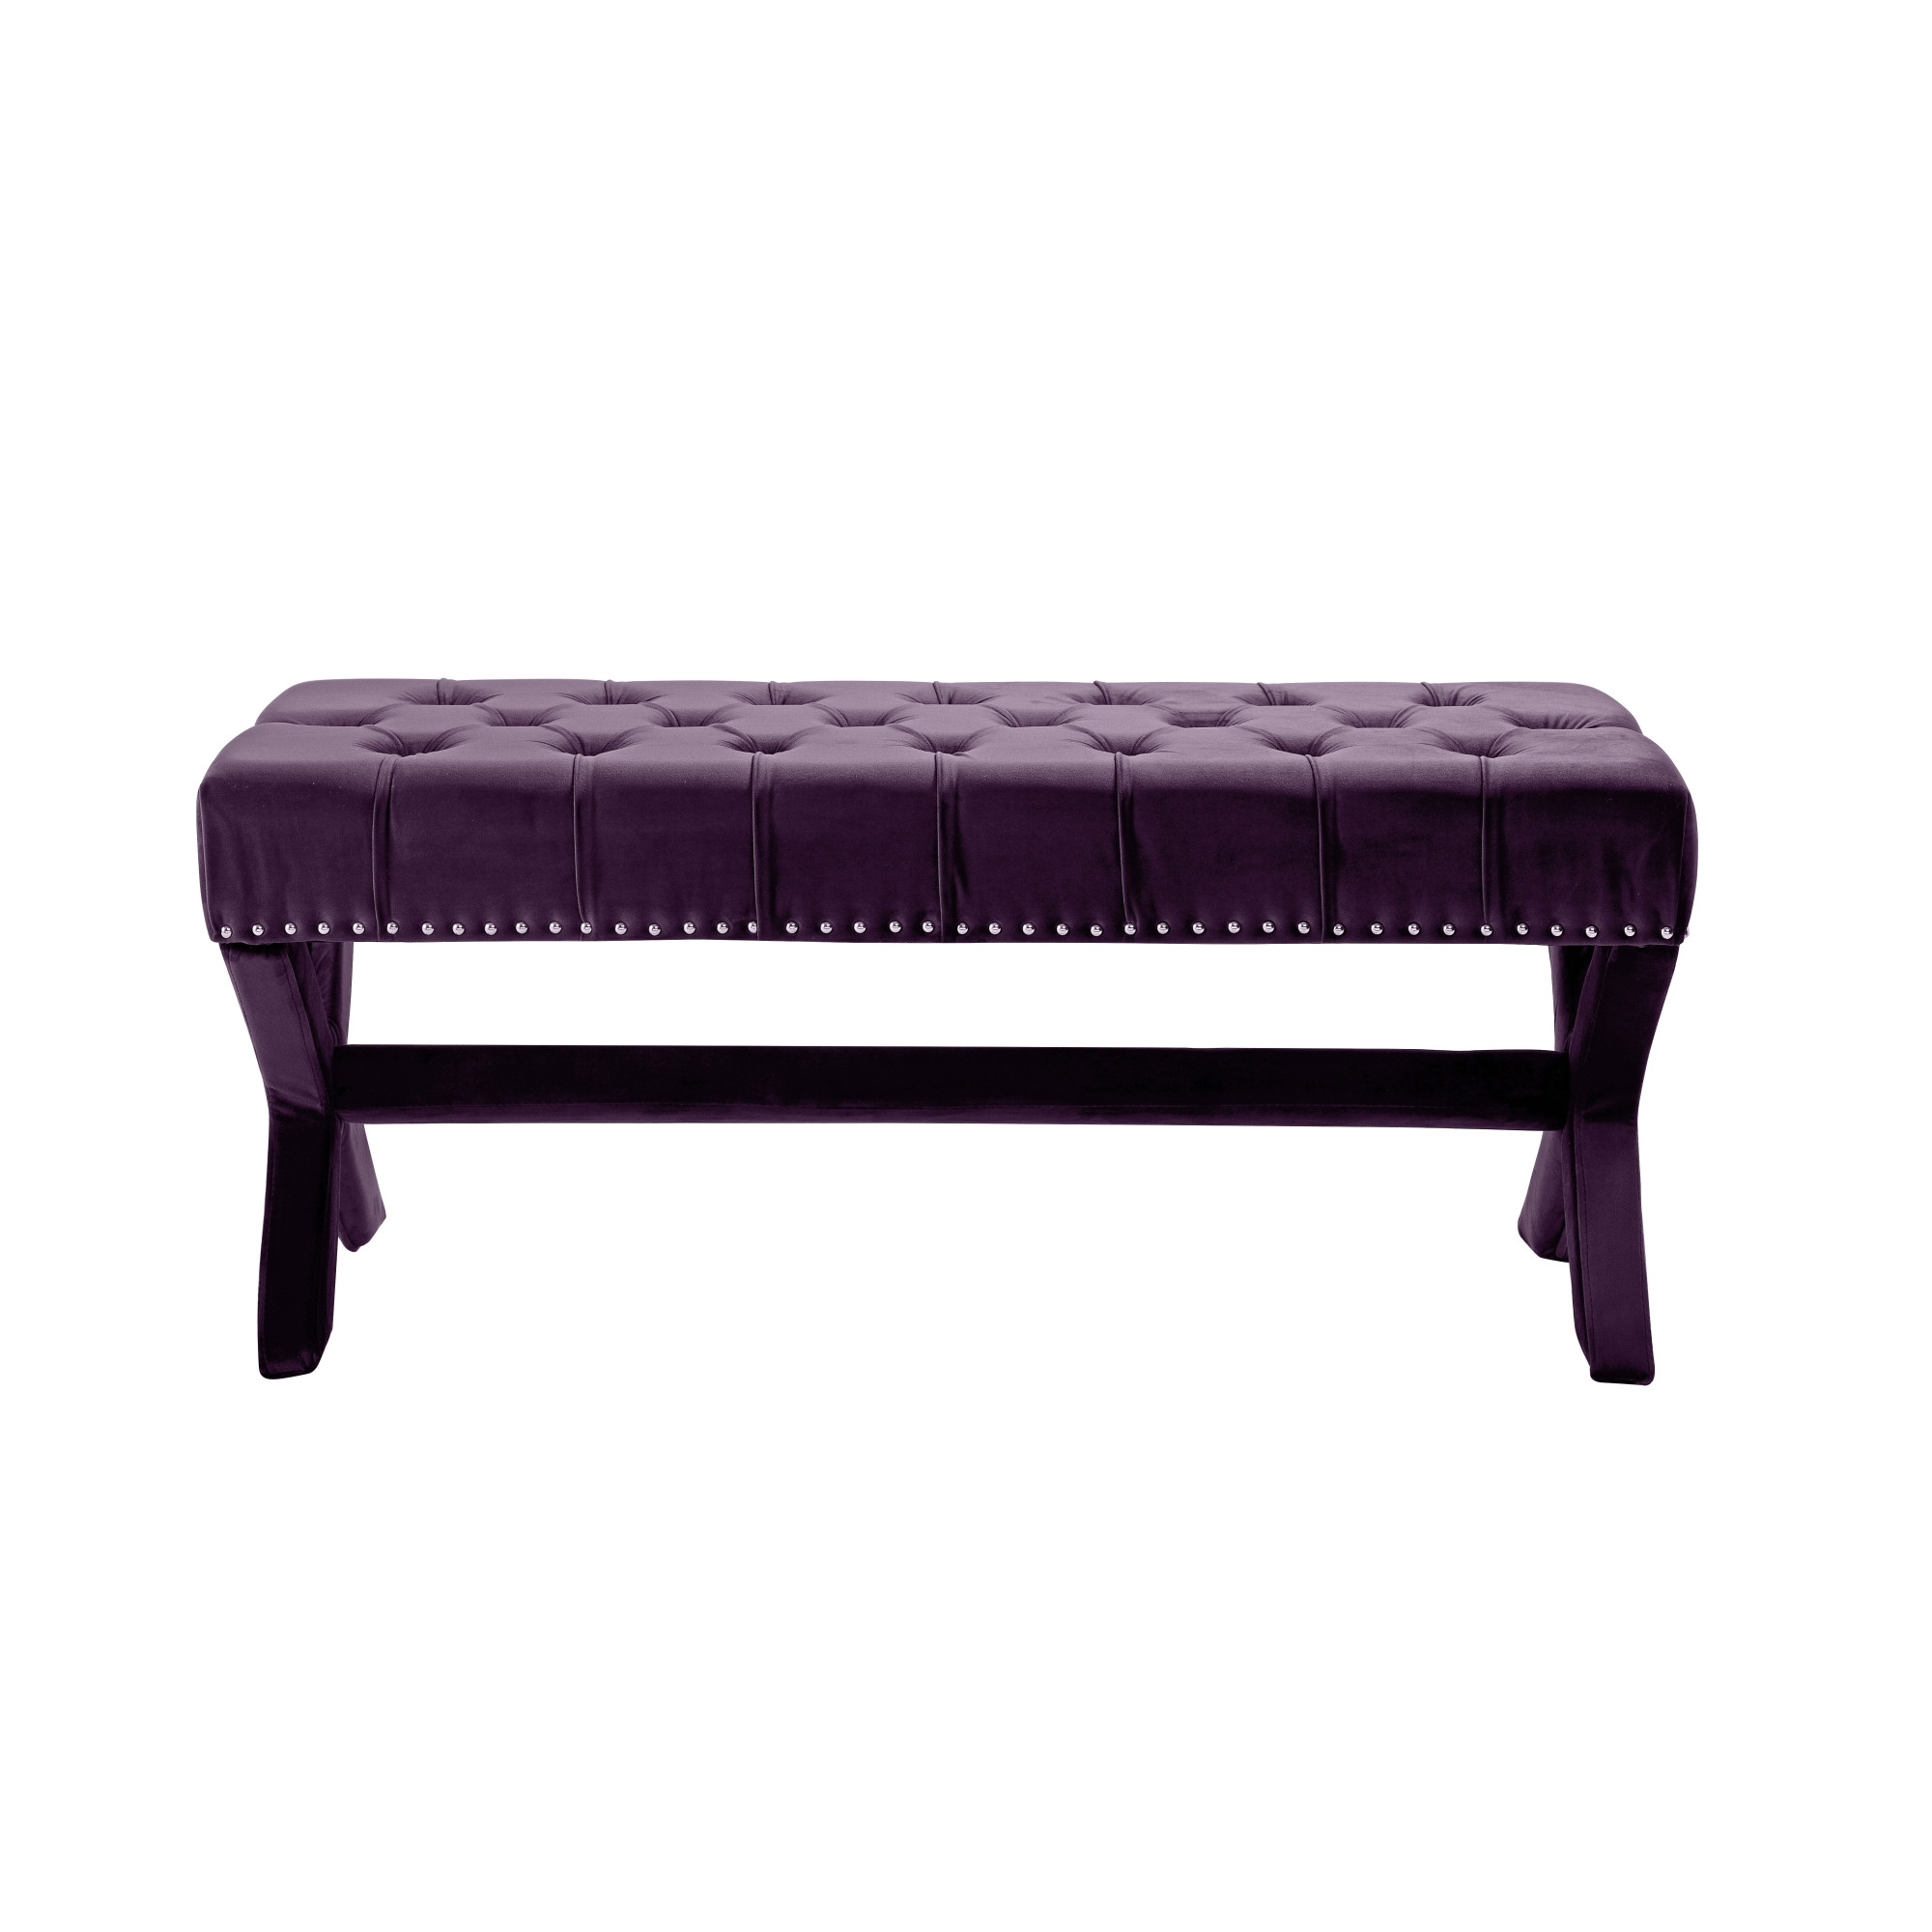 45" Plum And Purple Upholstered Velvet Bench-490840-1